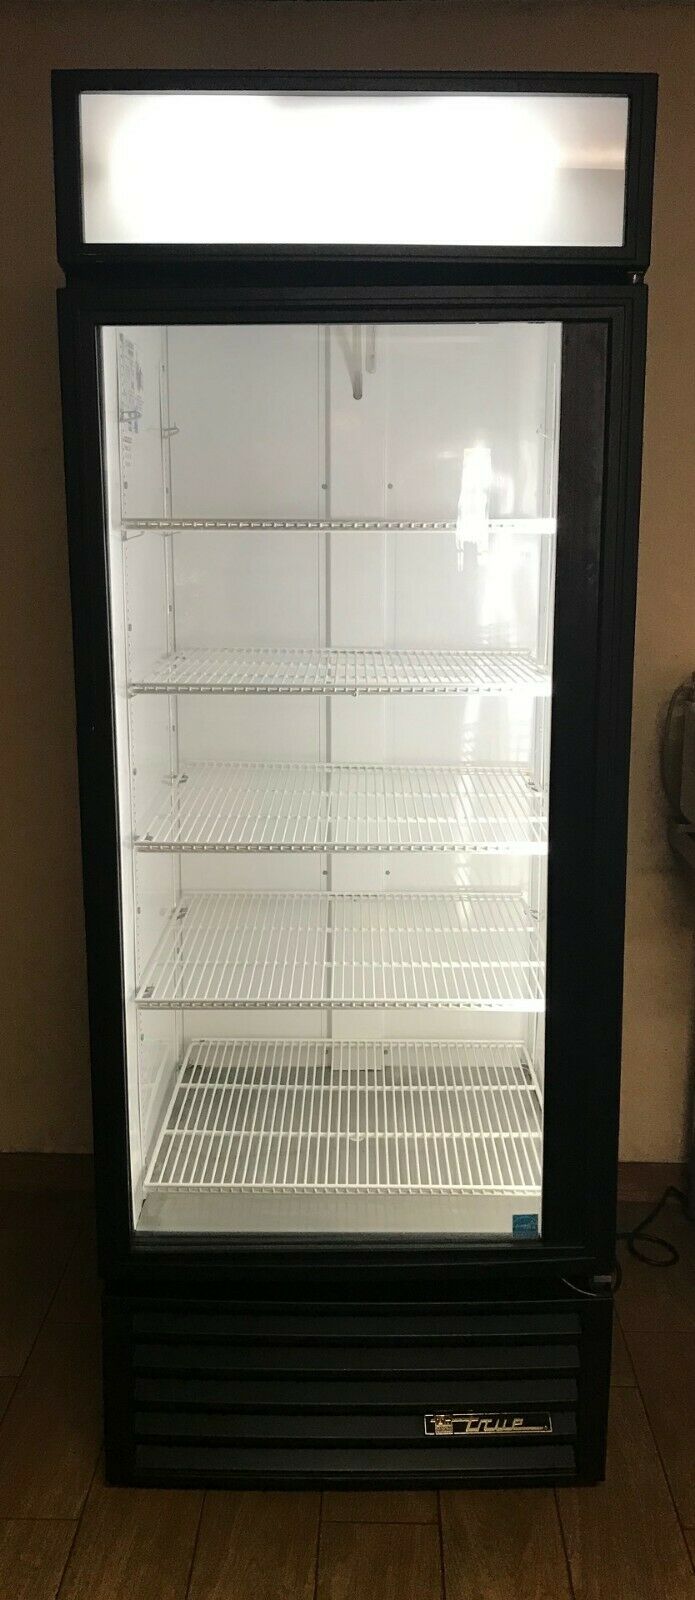 True GDM-26 26 cu ft Single Door Commercial Merchandiser Refrigerator